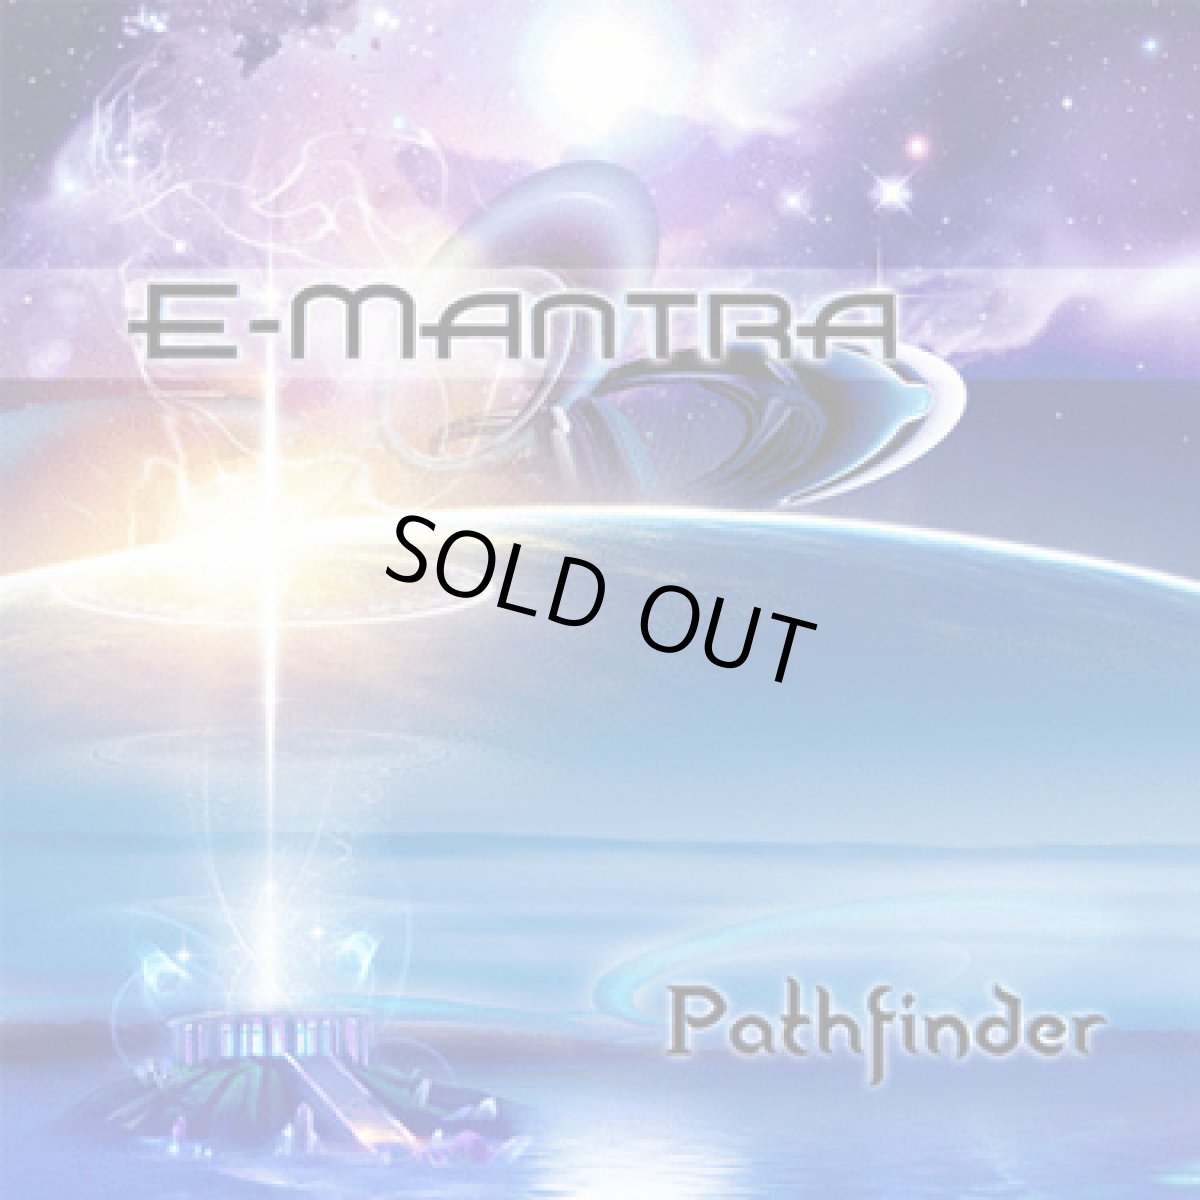 画像1: CD「E-Mantra / Pathfinder」 (1)